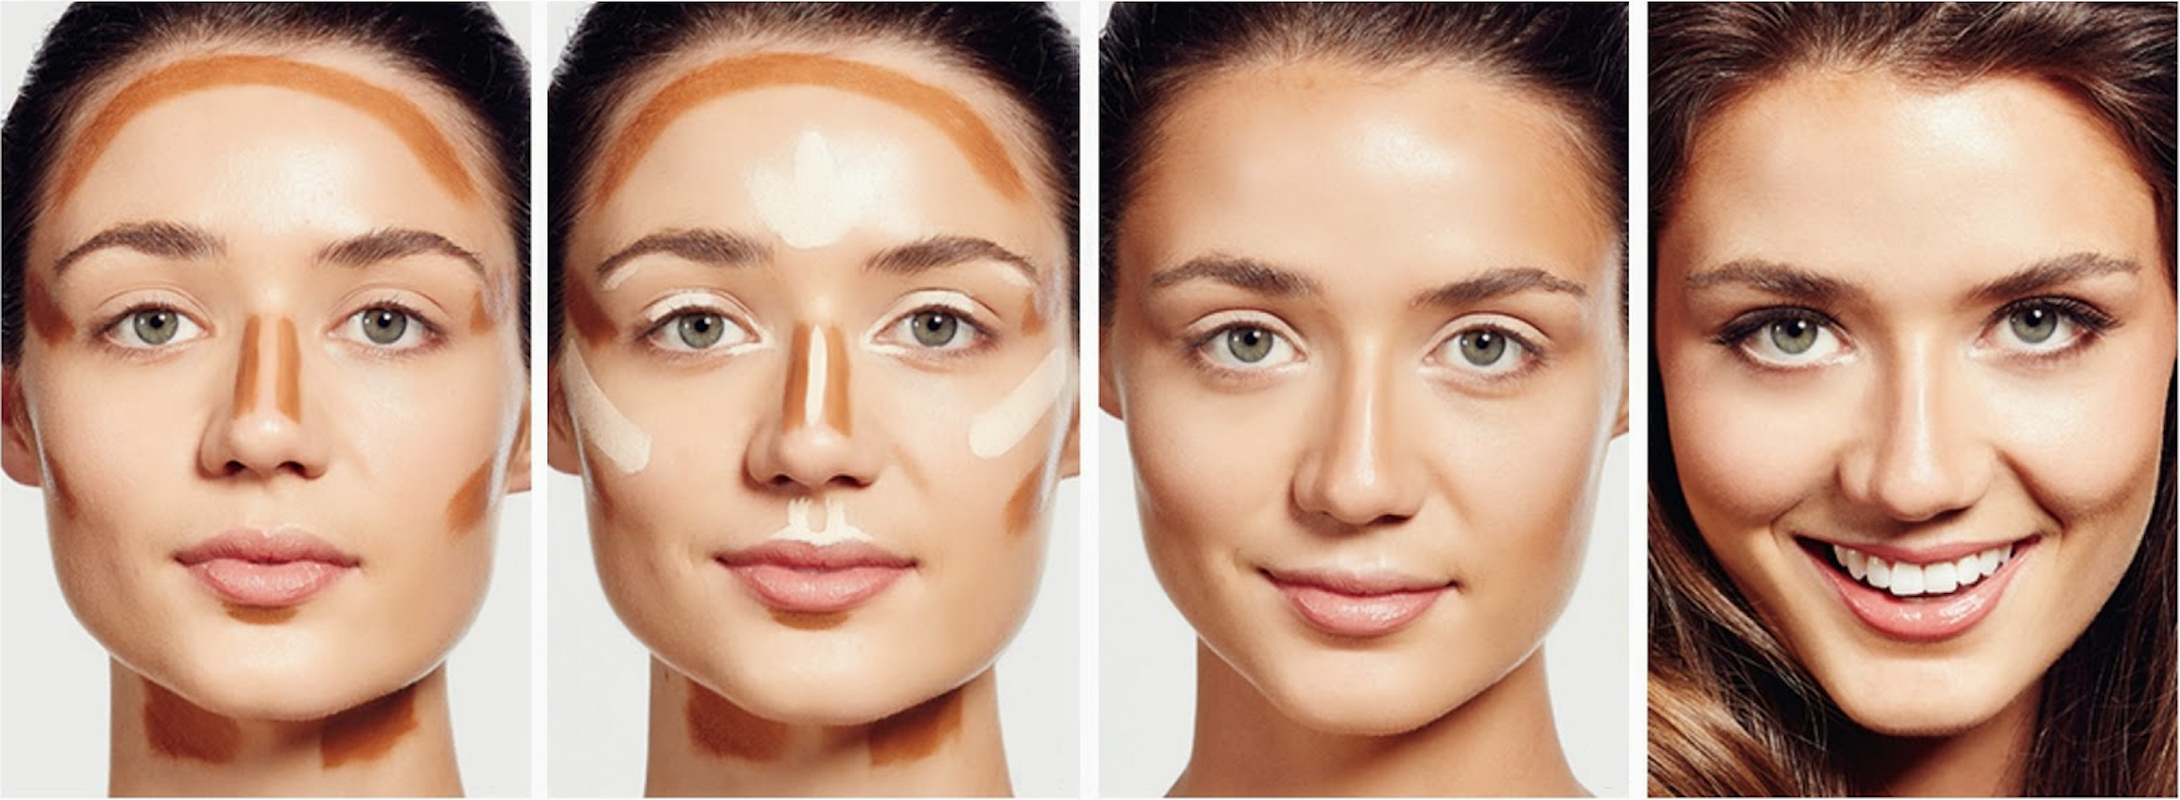 Plástica sem cirurgia? Transforme seu rosto com a maquiagem de contorno